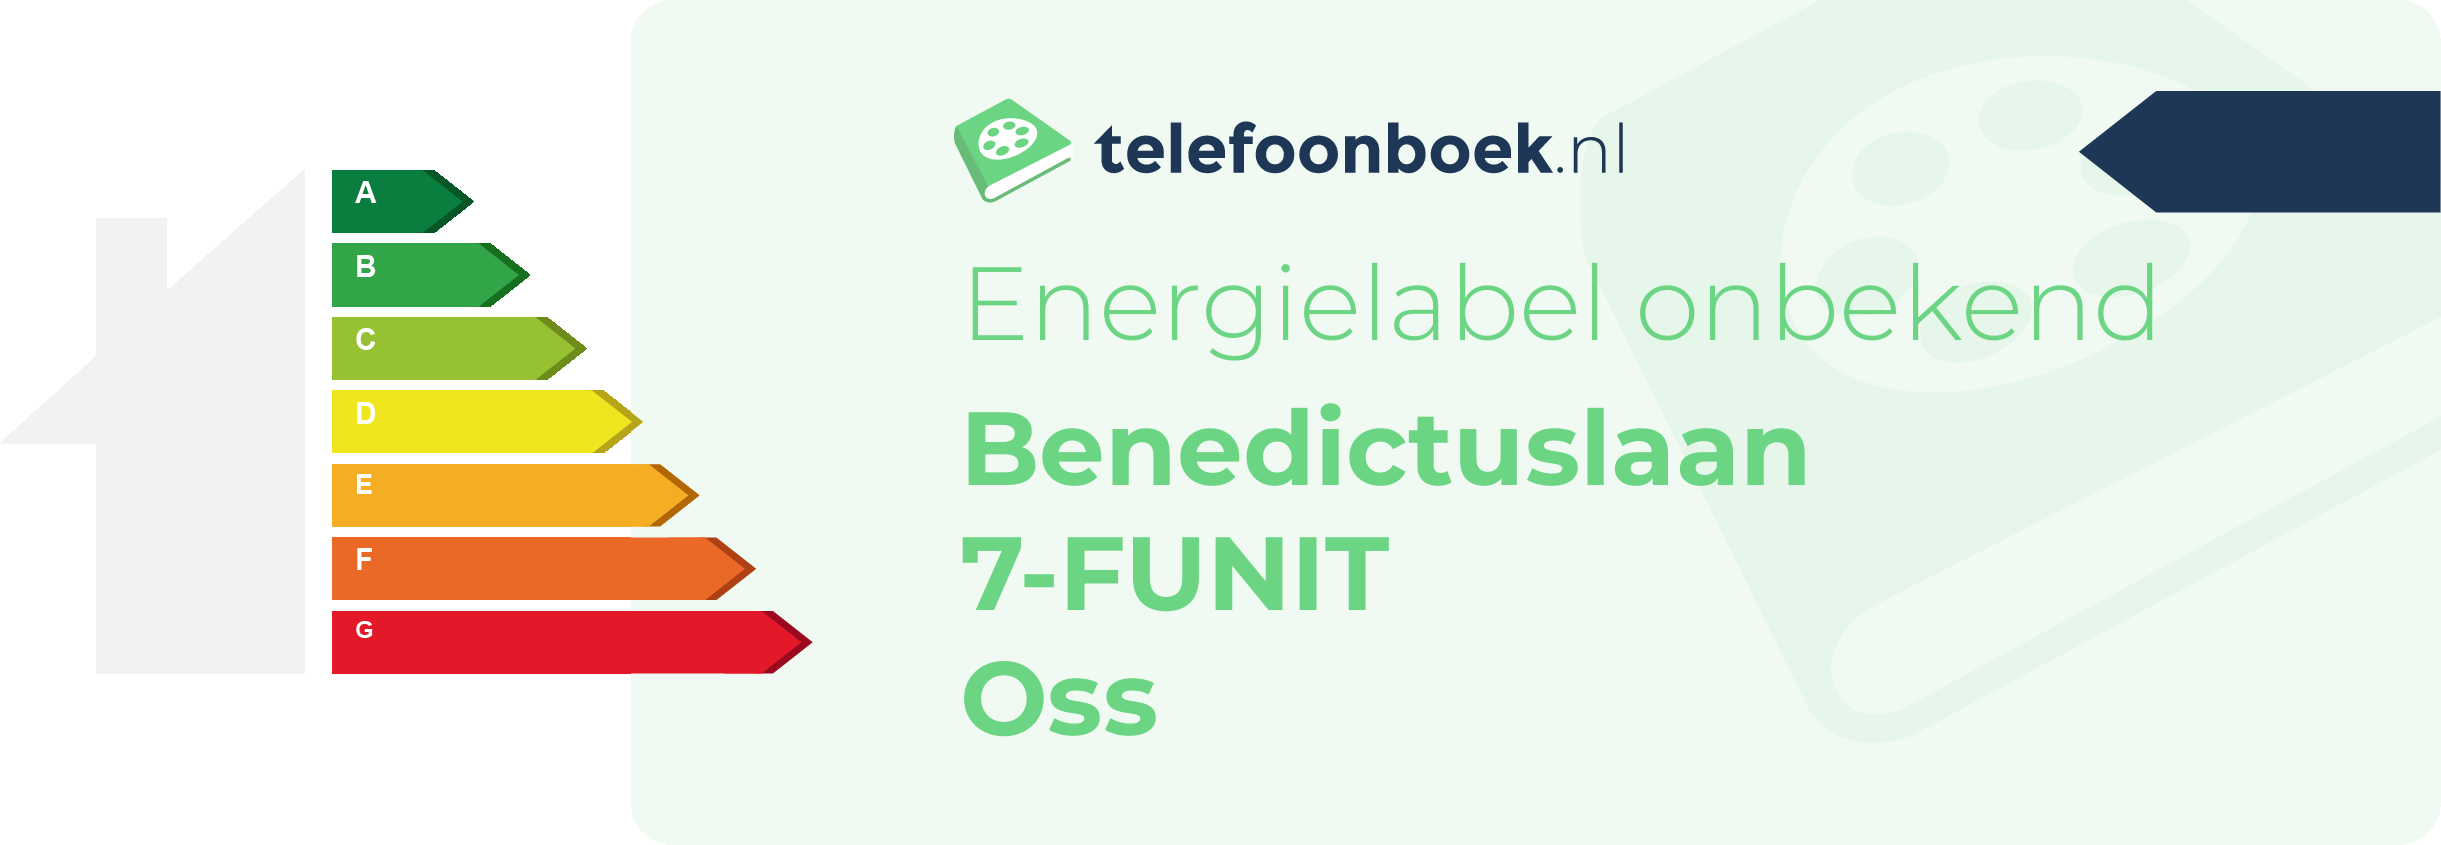 Energielabel Benedictuslaan 7-FUNIT Oss